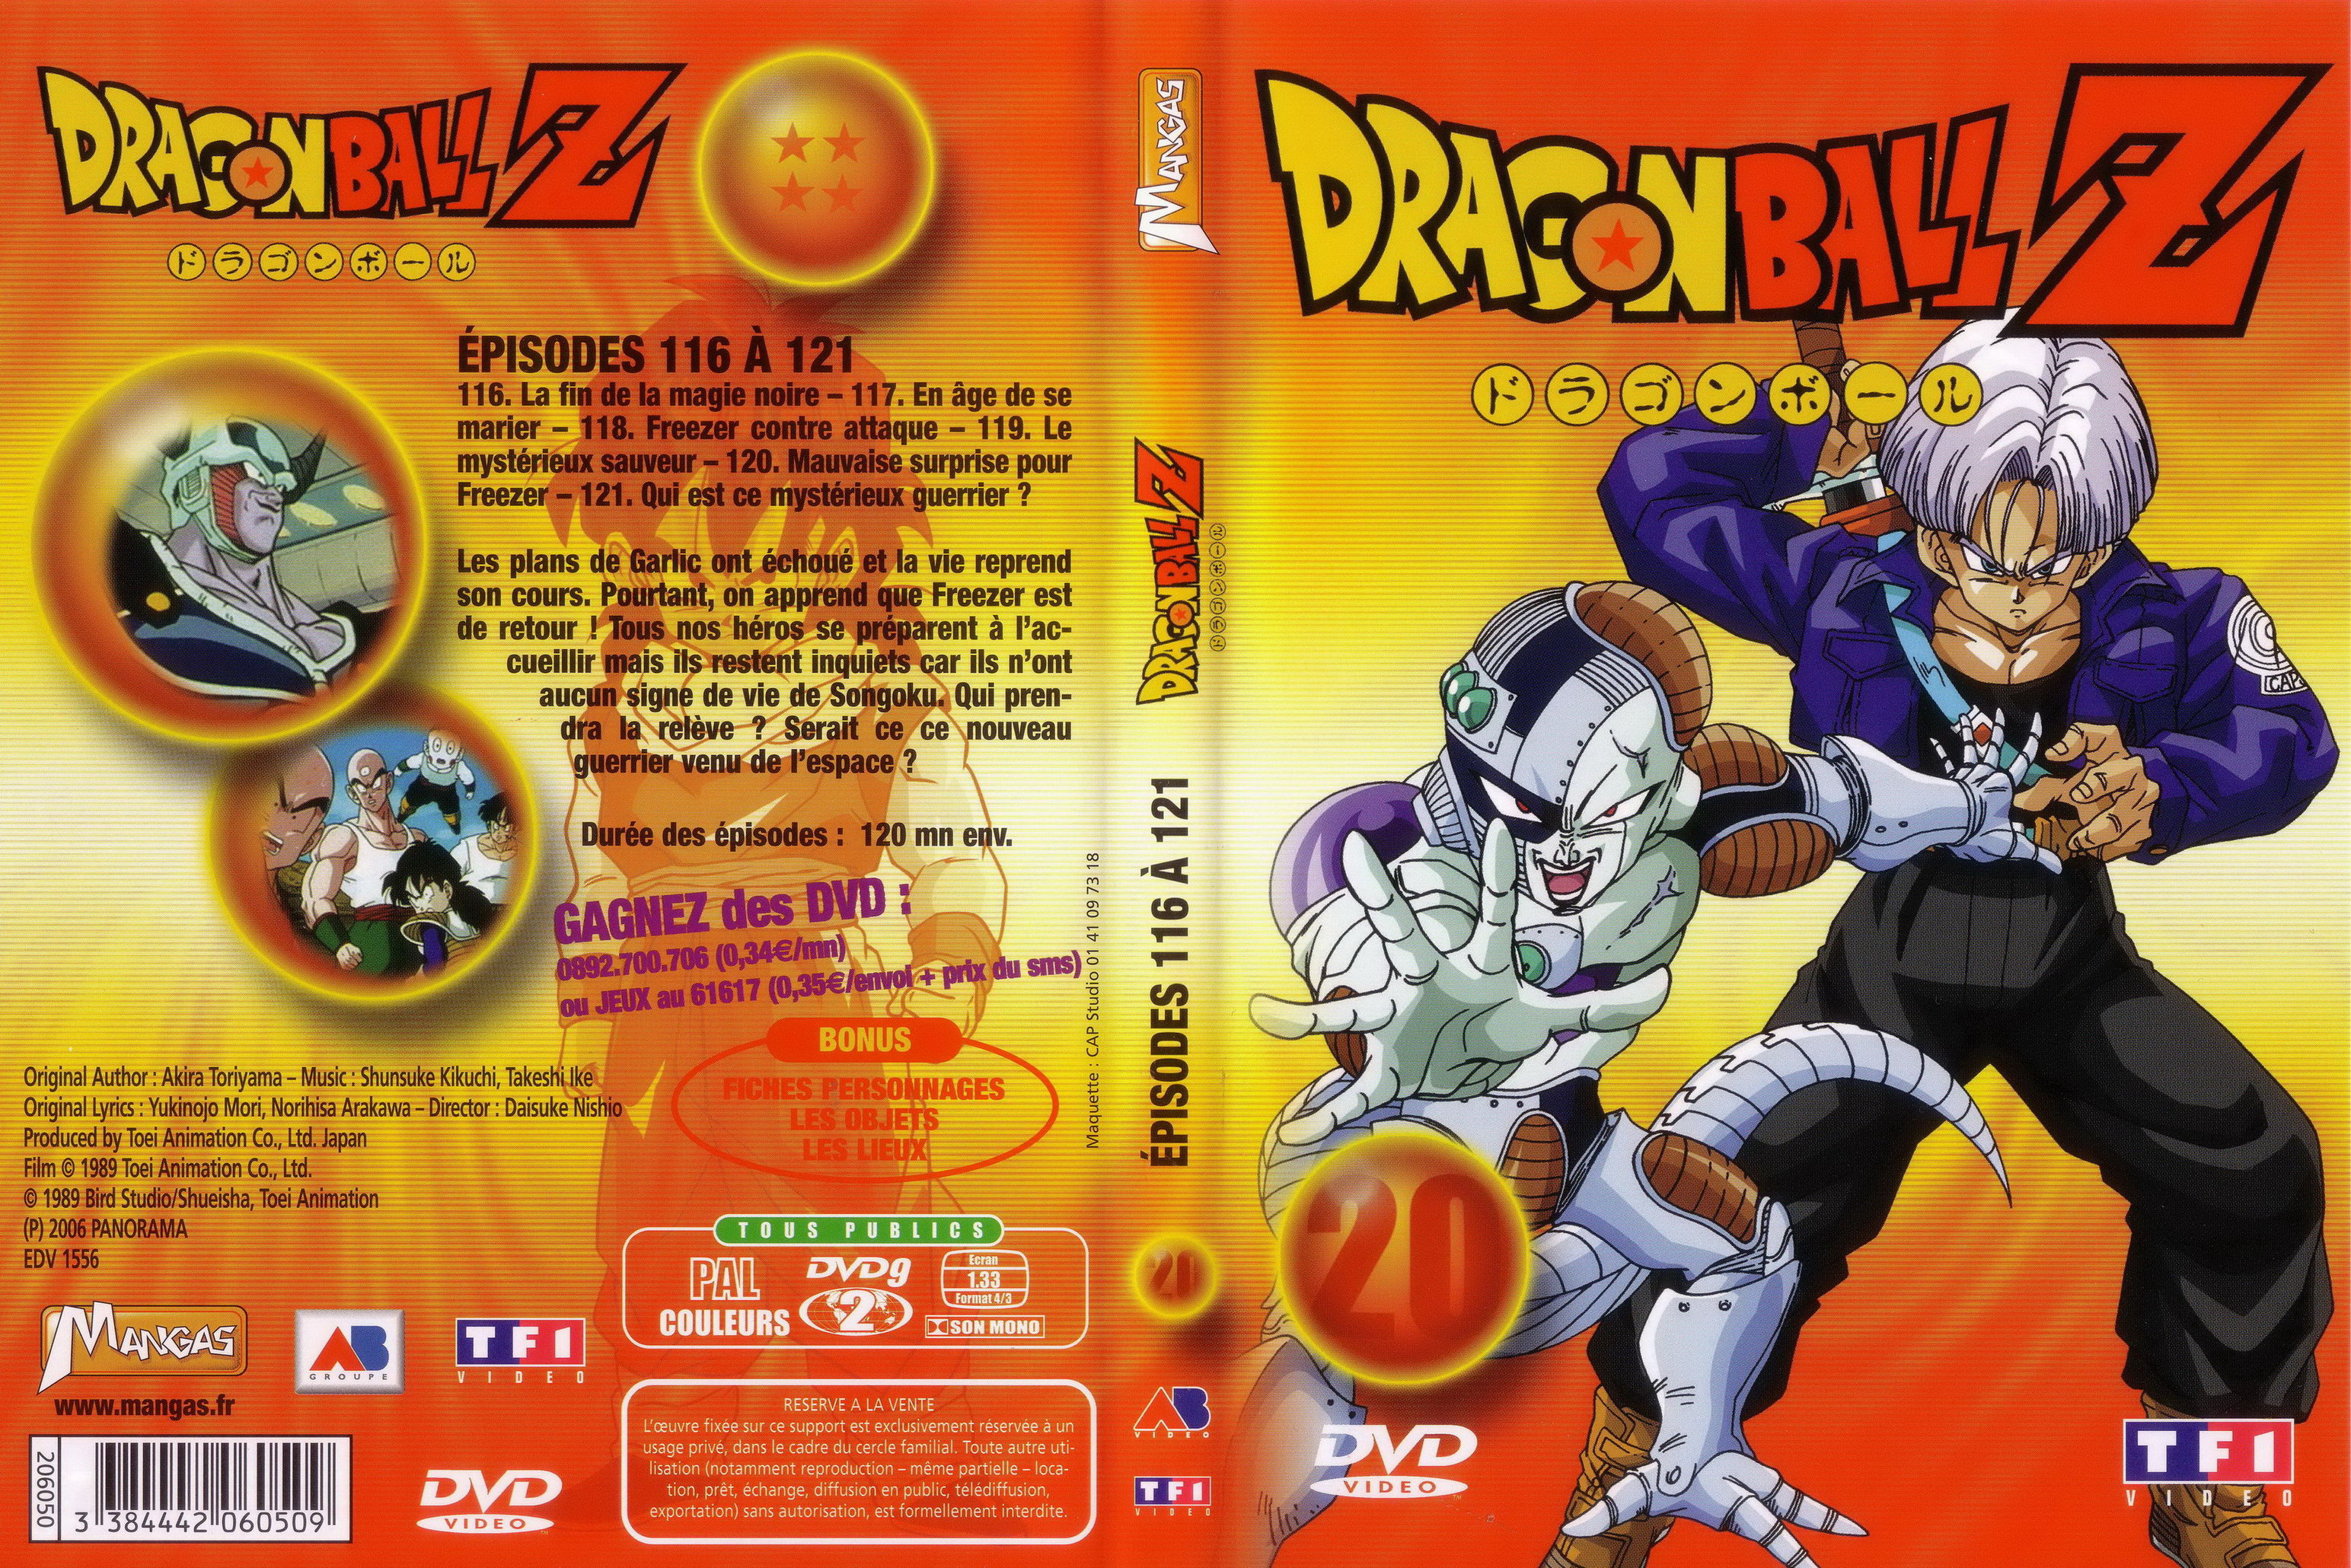 Jaquette DVD Dragon ball Z vol 20 v2